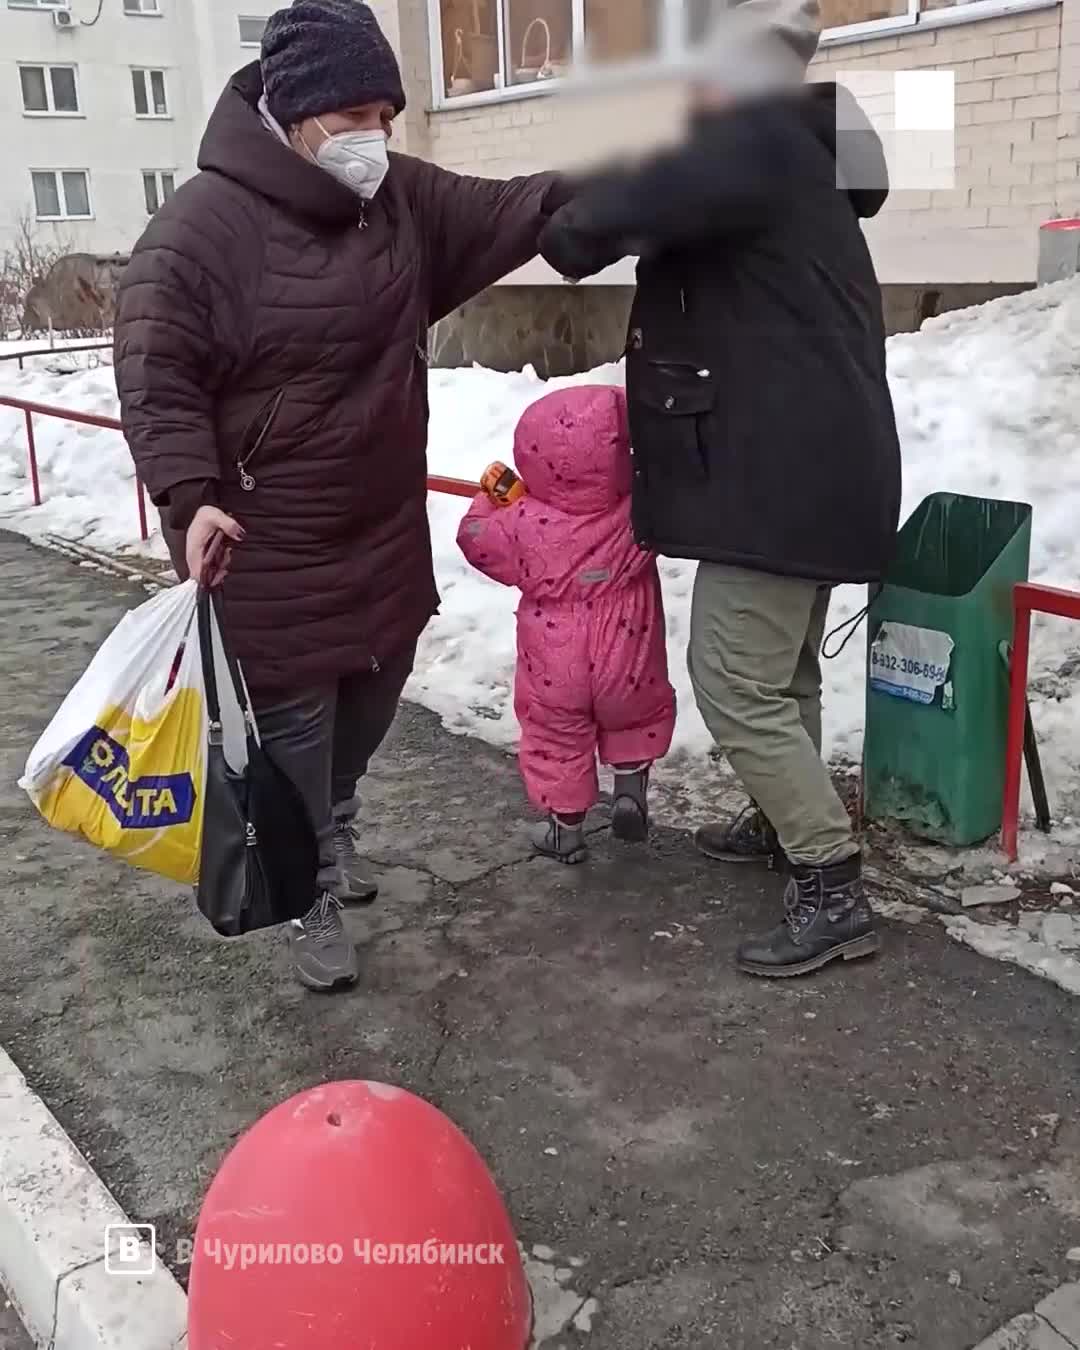 Пьяная мать из Чурилово таскала ребенка и дралась с прохожими в Челябинске  1 марта 2022 года - 1 марта 2022 - 74.ru